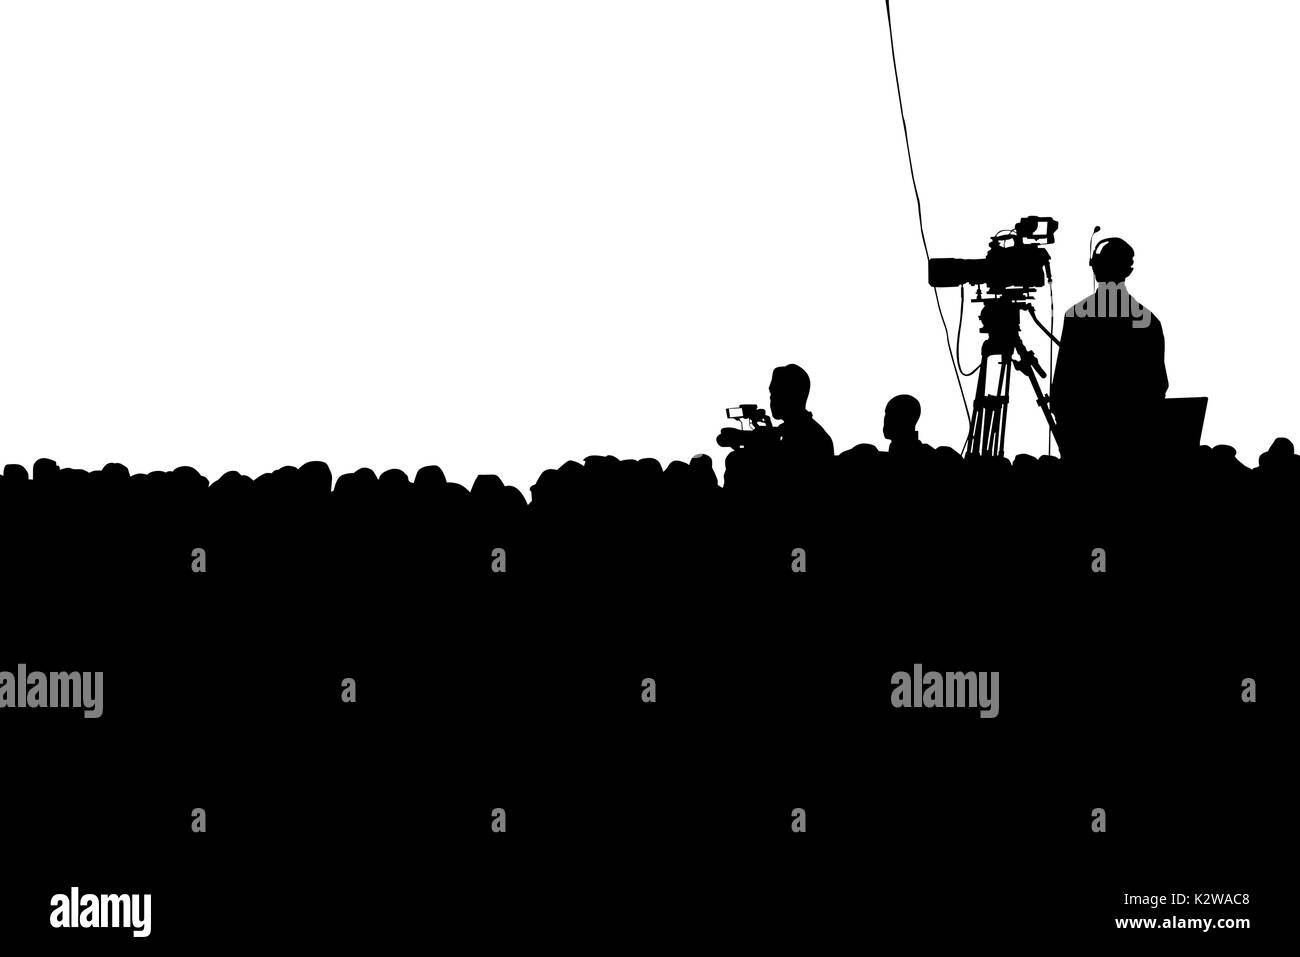 Conférence de presse de télévision et caméraman production foule silhouette. Clipping path Banque D'Images